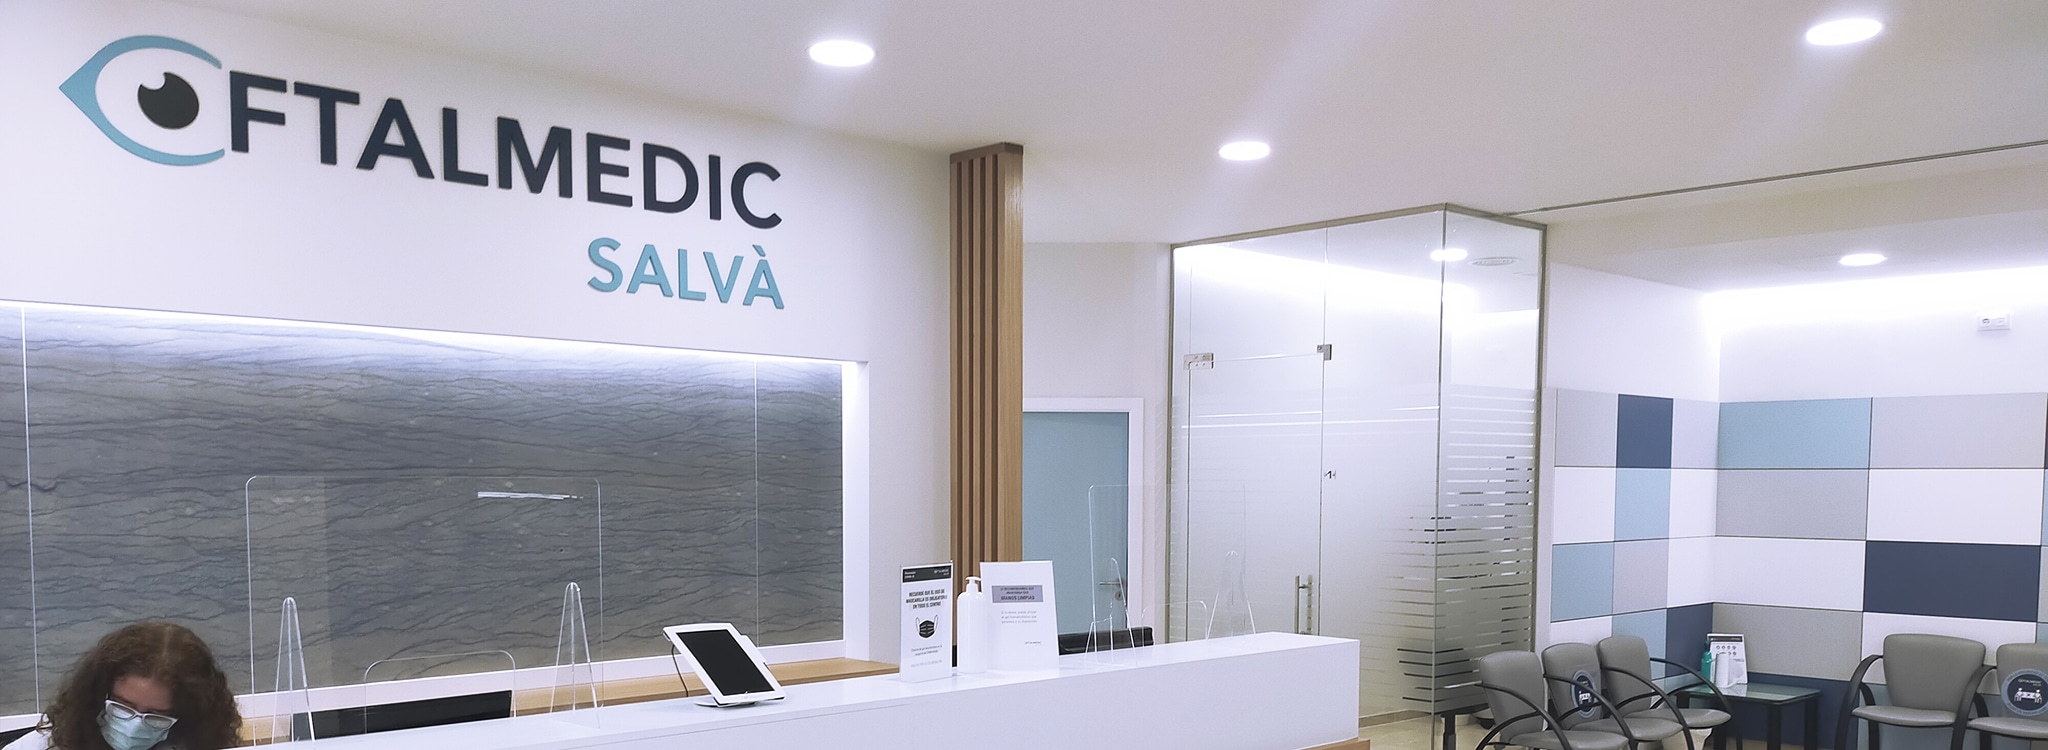 Oftalmedic Salvà Manacor mejora sus instalaciones y su equipamiento